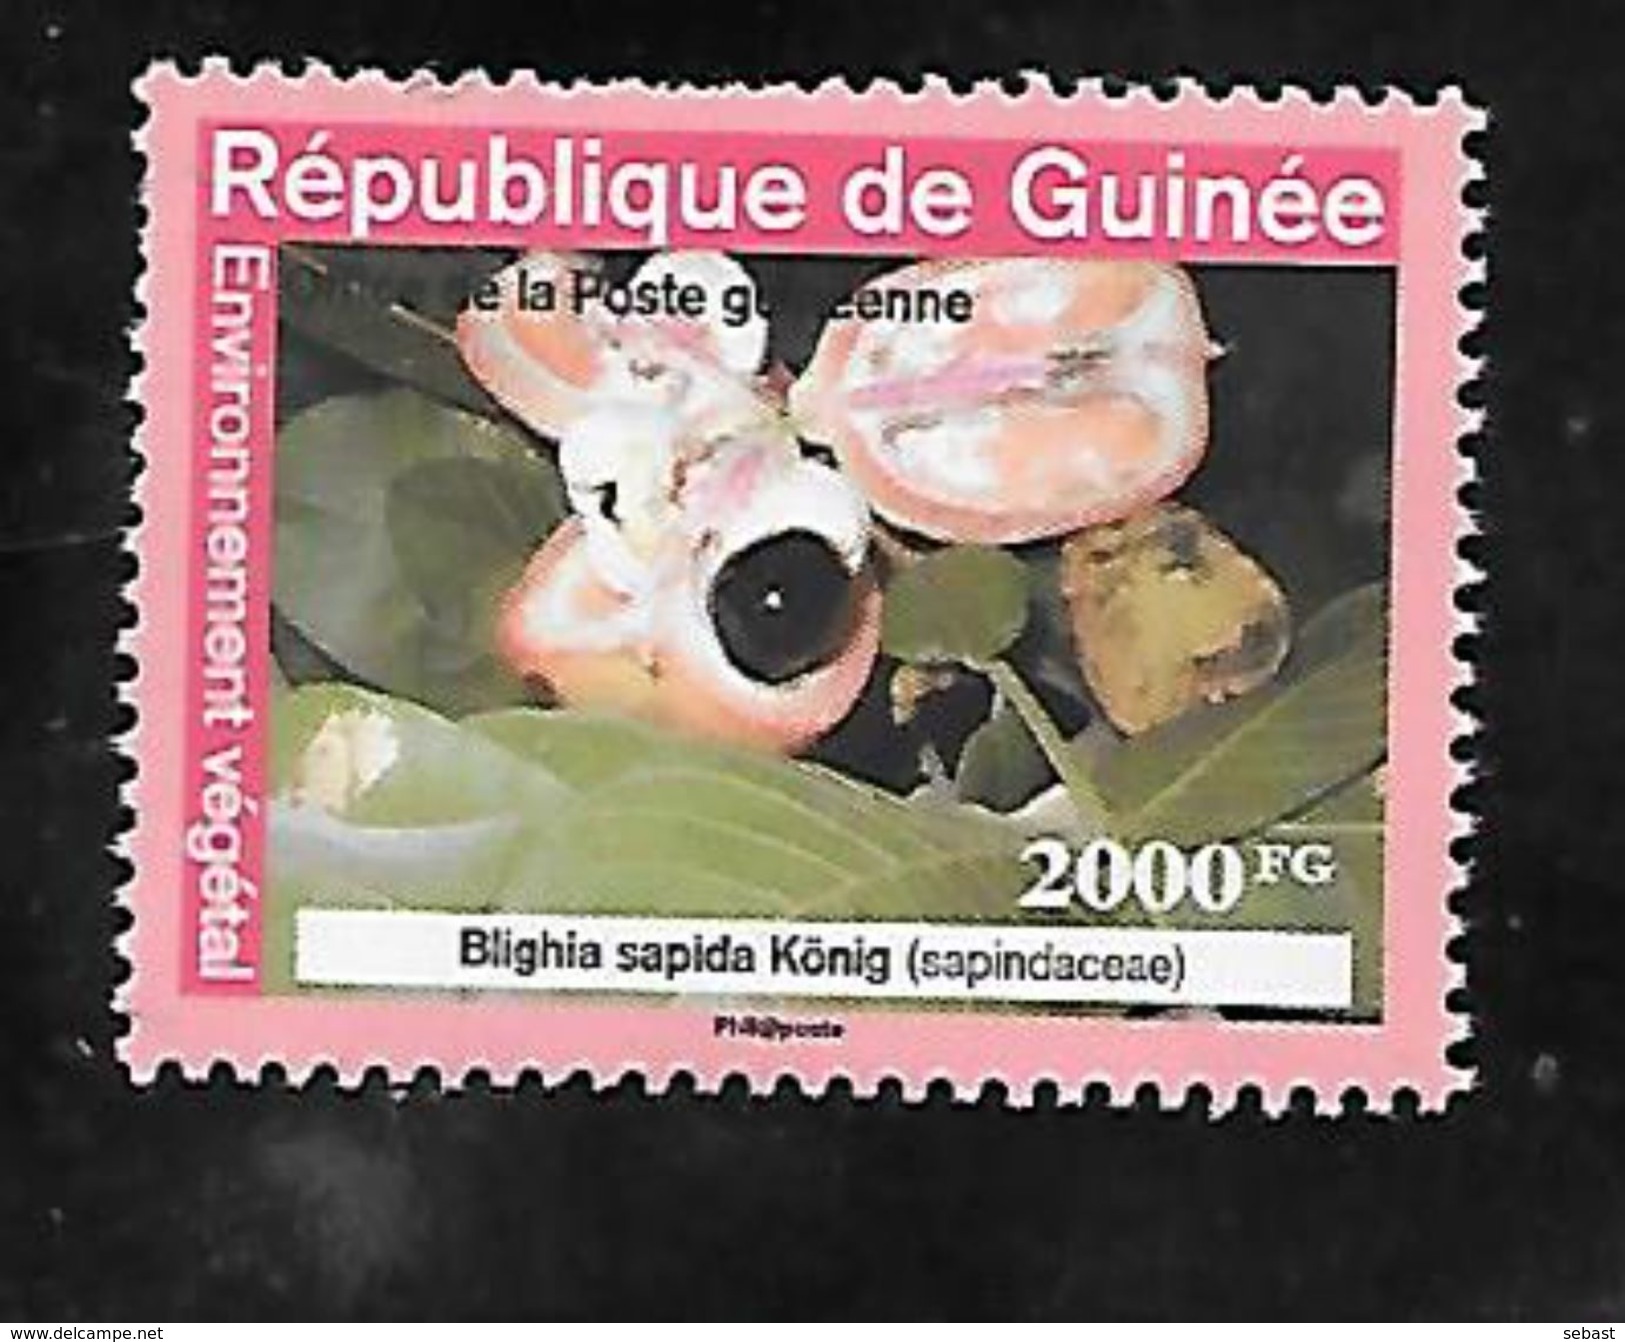 TIMBRE OBLITERE DE GUINEE DE 2009 N° MICHEL A 6354 - Guinee (1958-...)